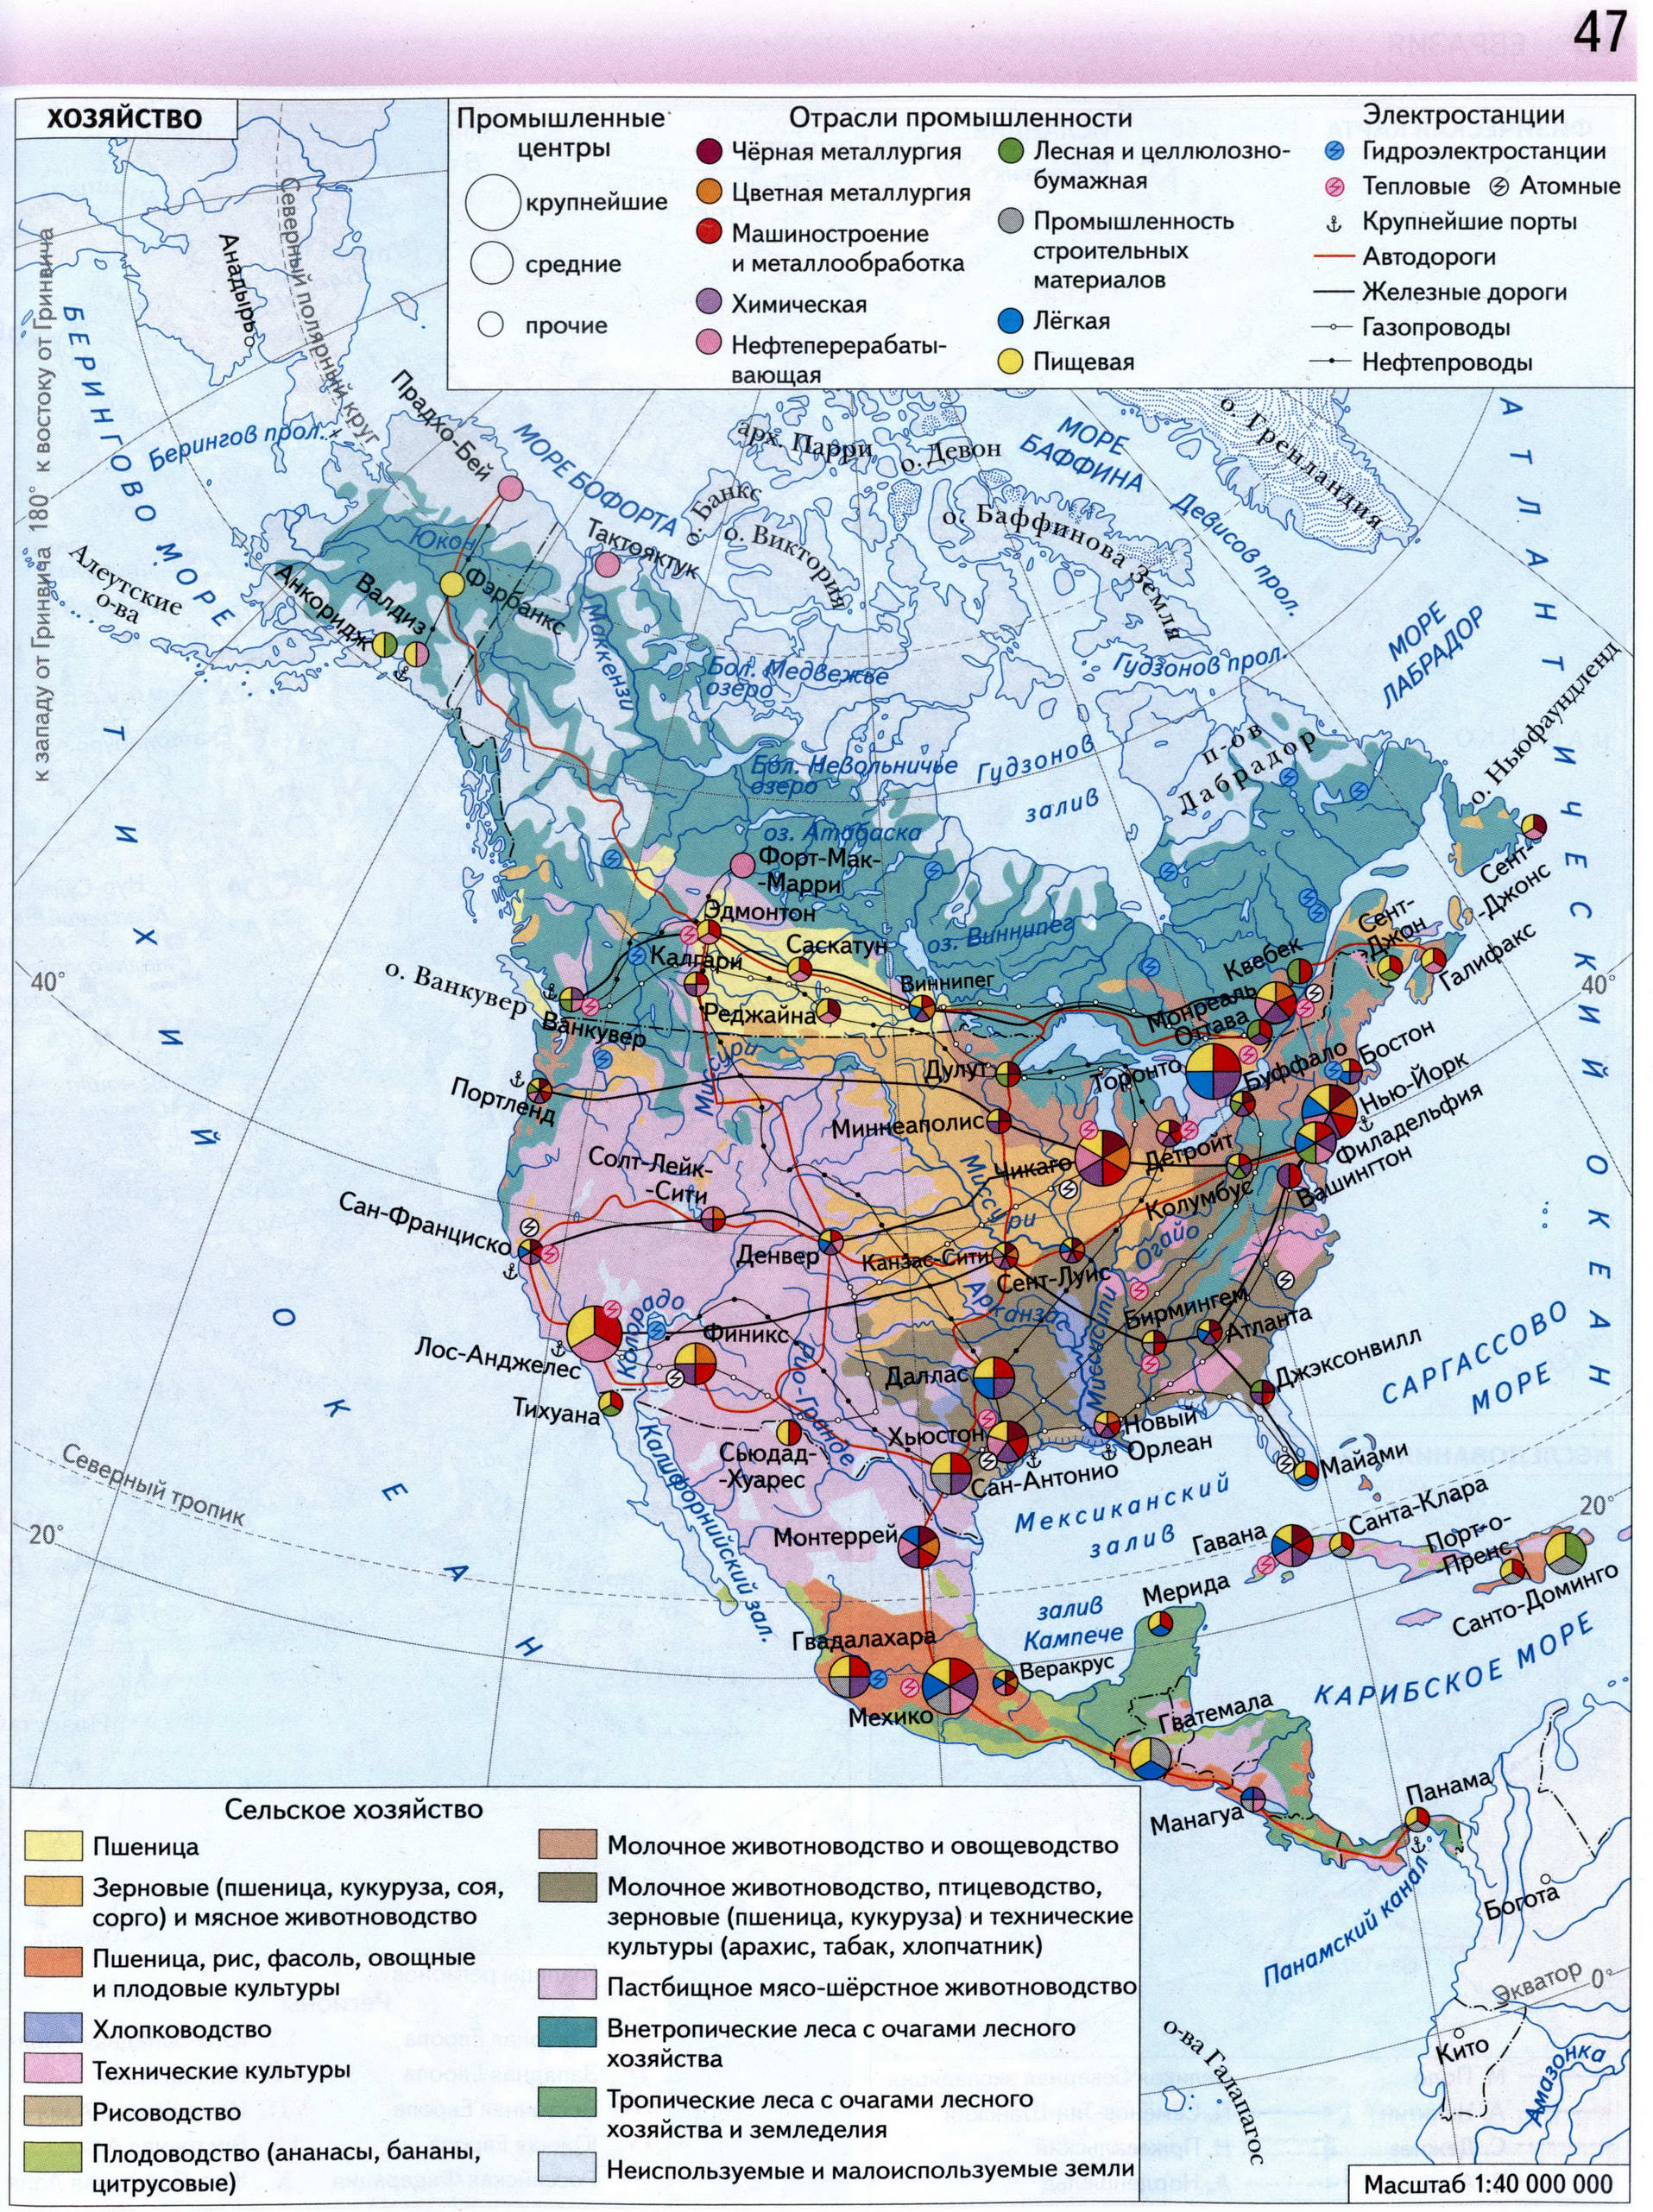 Атлас 7 класс Вентана Граф - Северная Америка хозяйство - экономическая карта